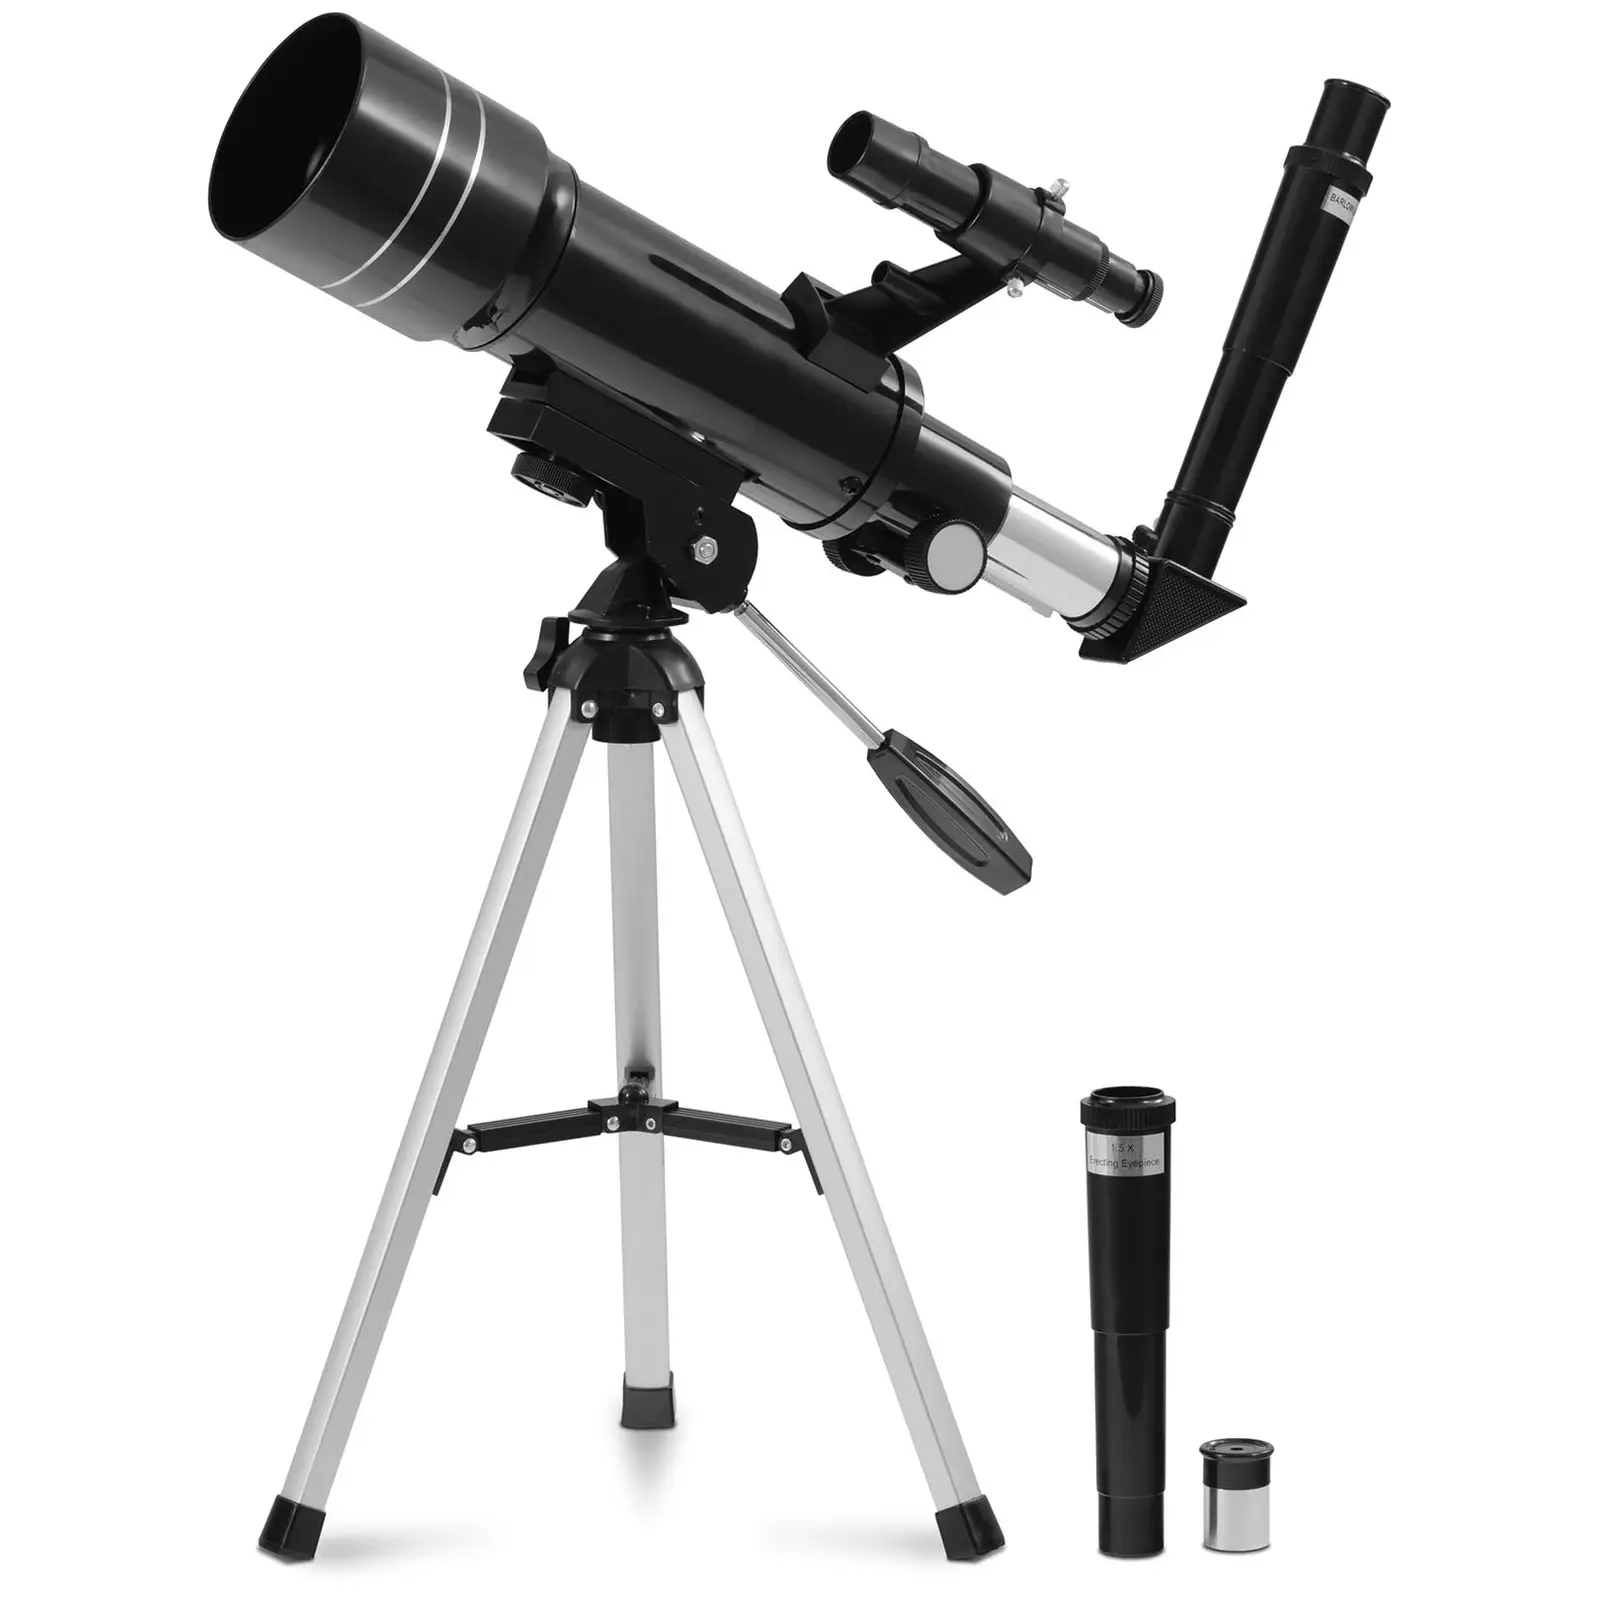 Τηλεσκόπιο - Ø 69,78 mm - 360 mm - Βάση τριπόδου